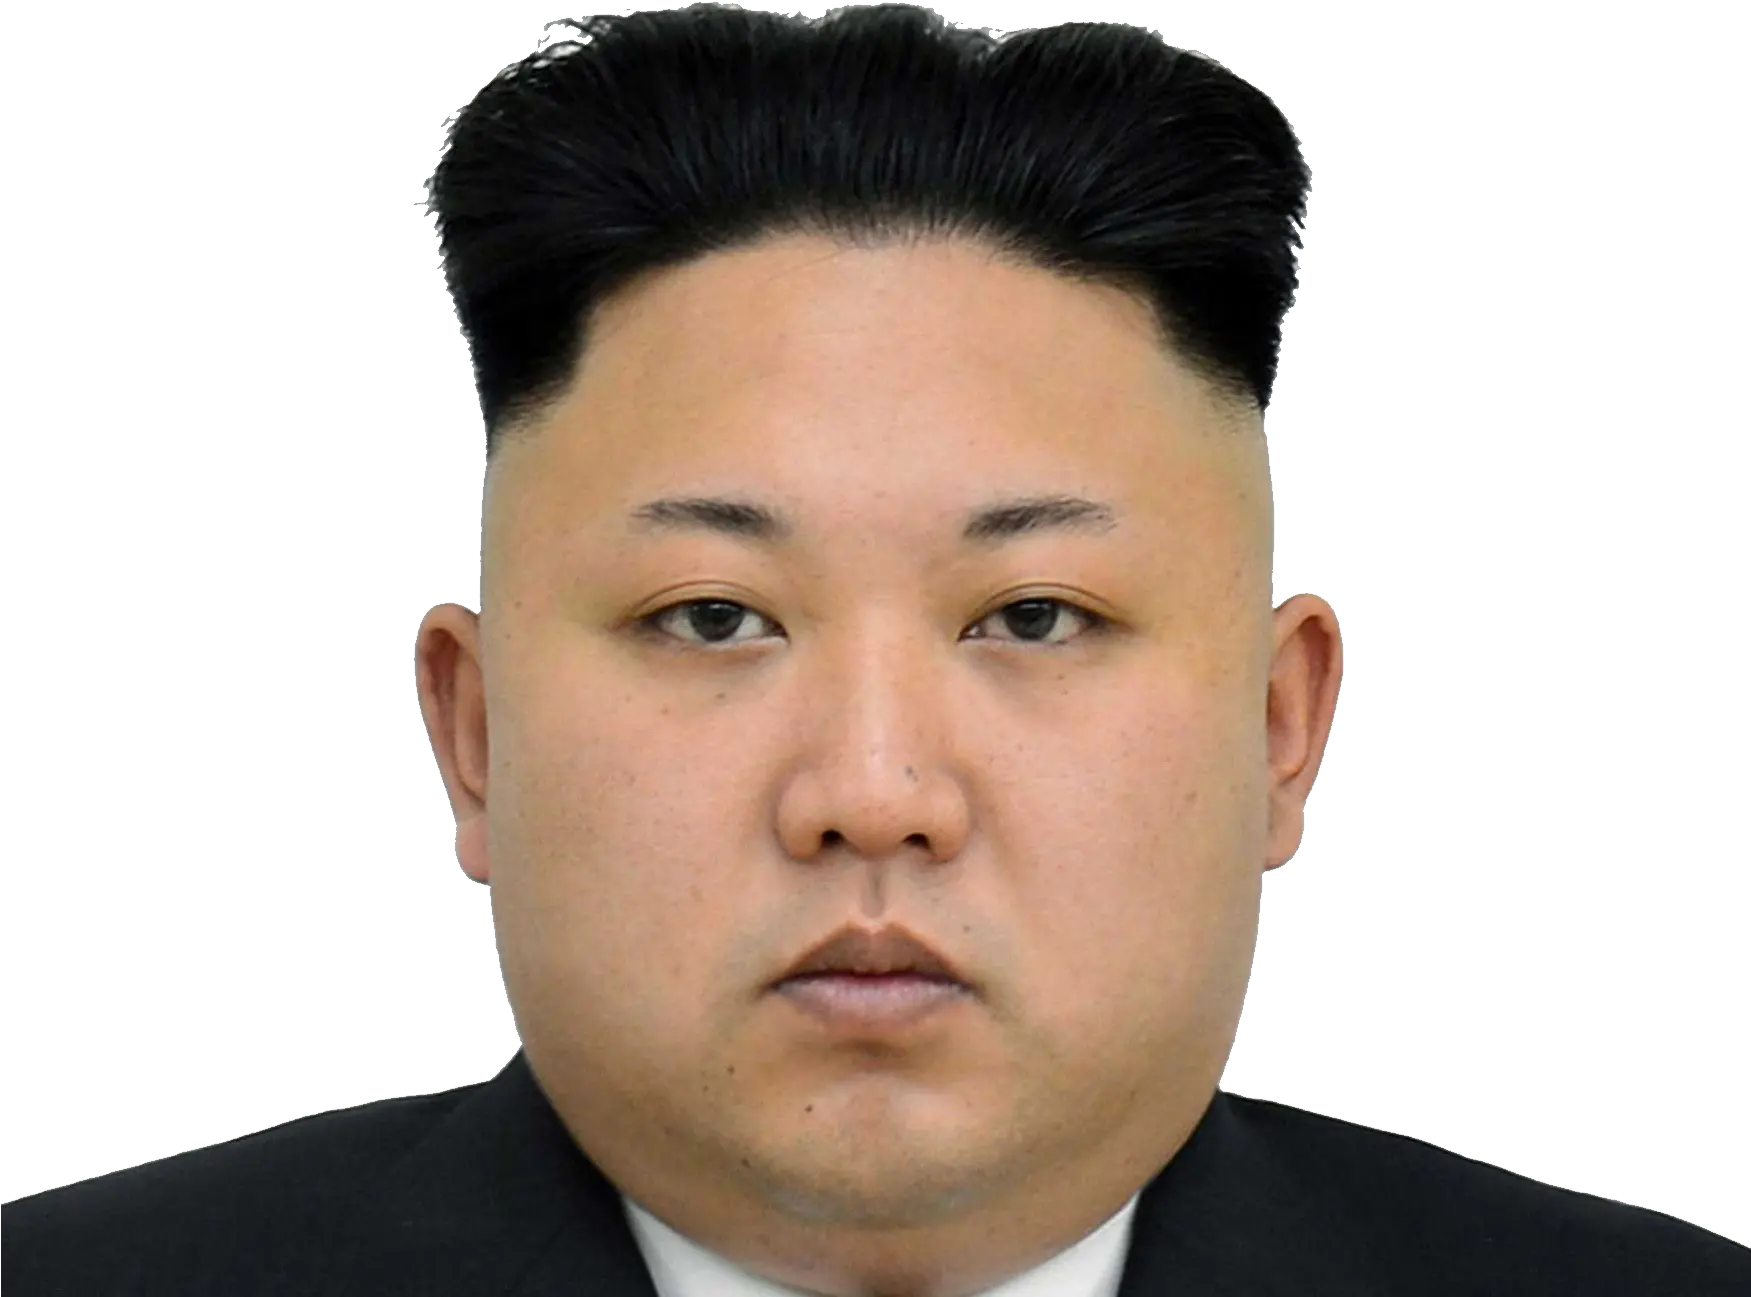 Png Transparent Kim Jong Un North Korea President Face Gal Gadot Png